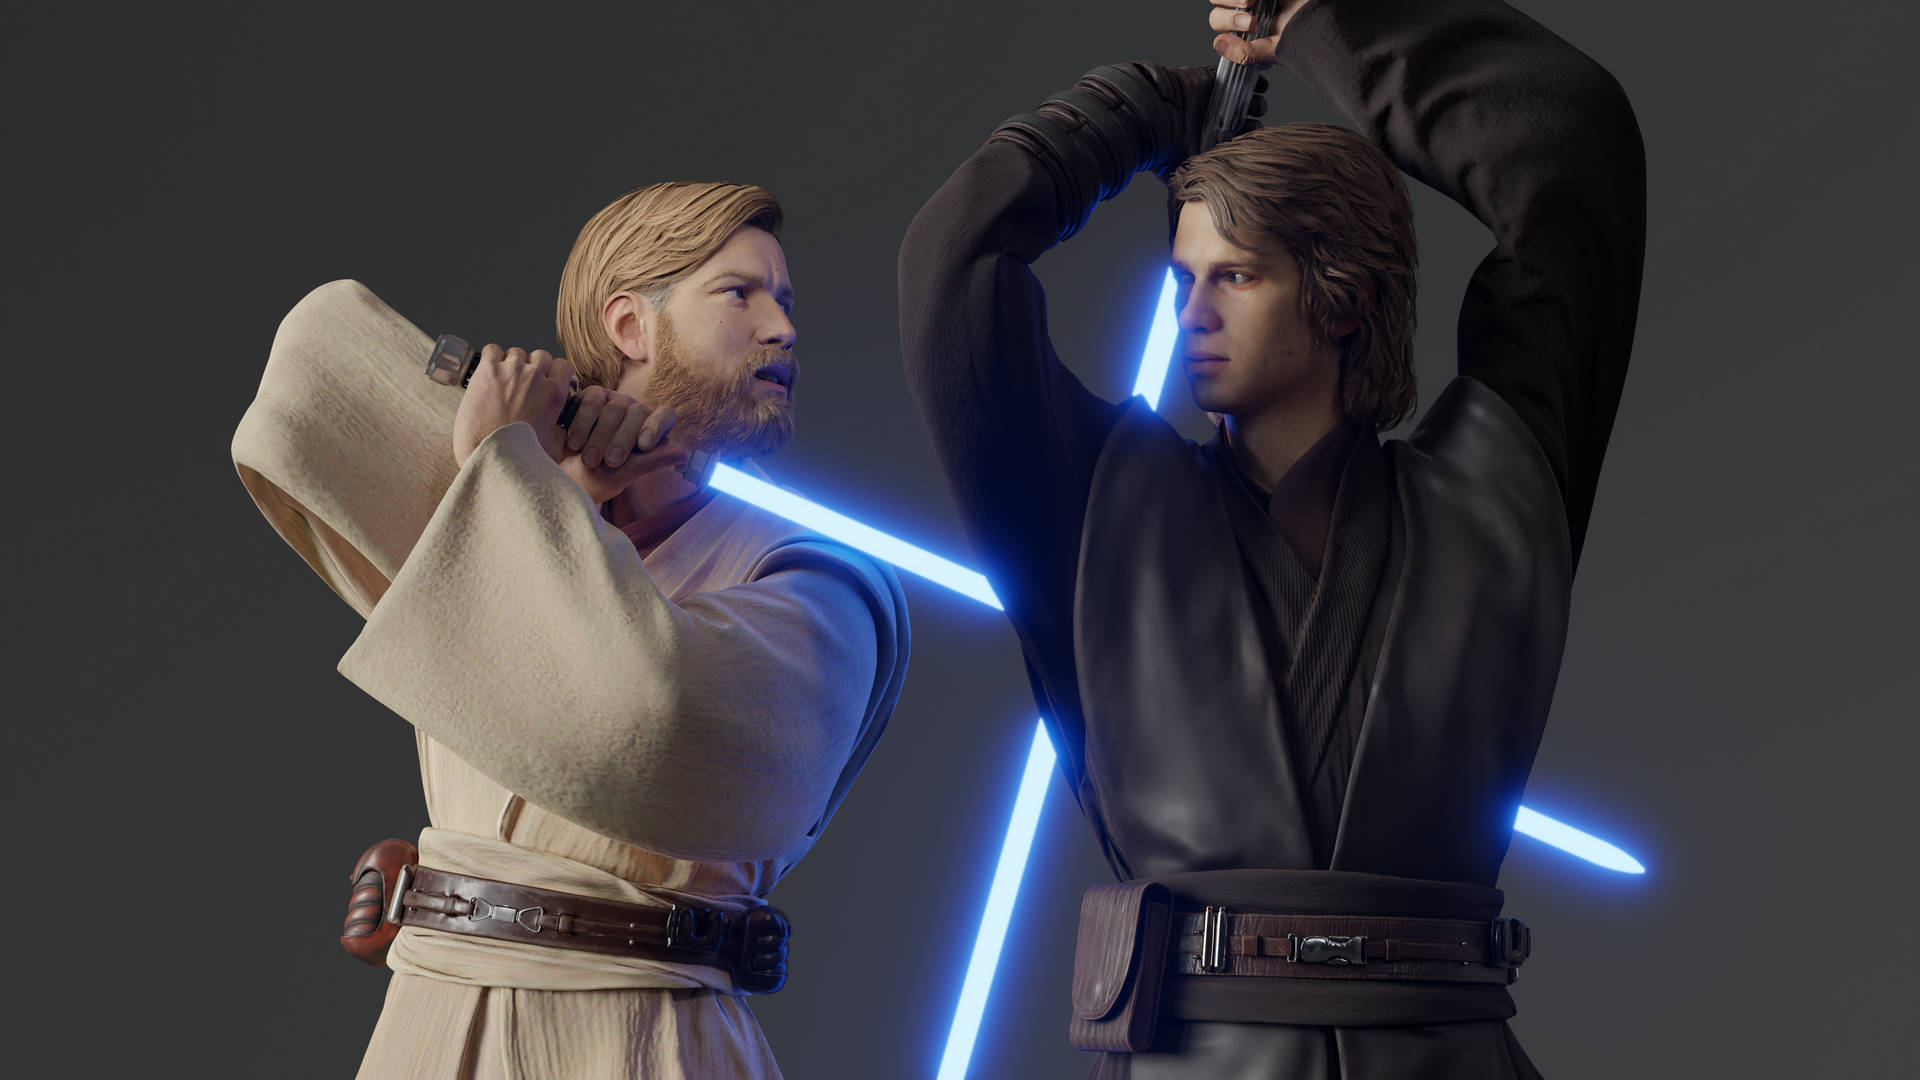 Obi Wan Kenobi Sparring With Anakin